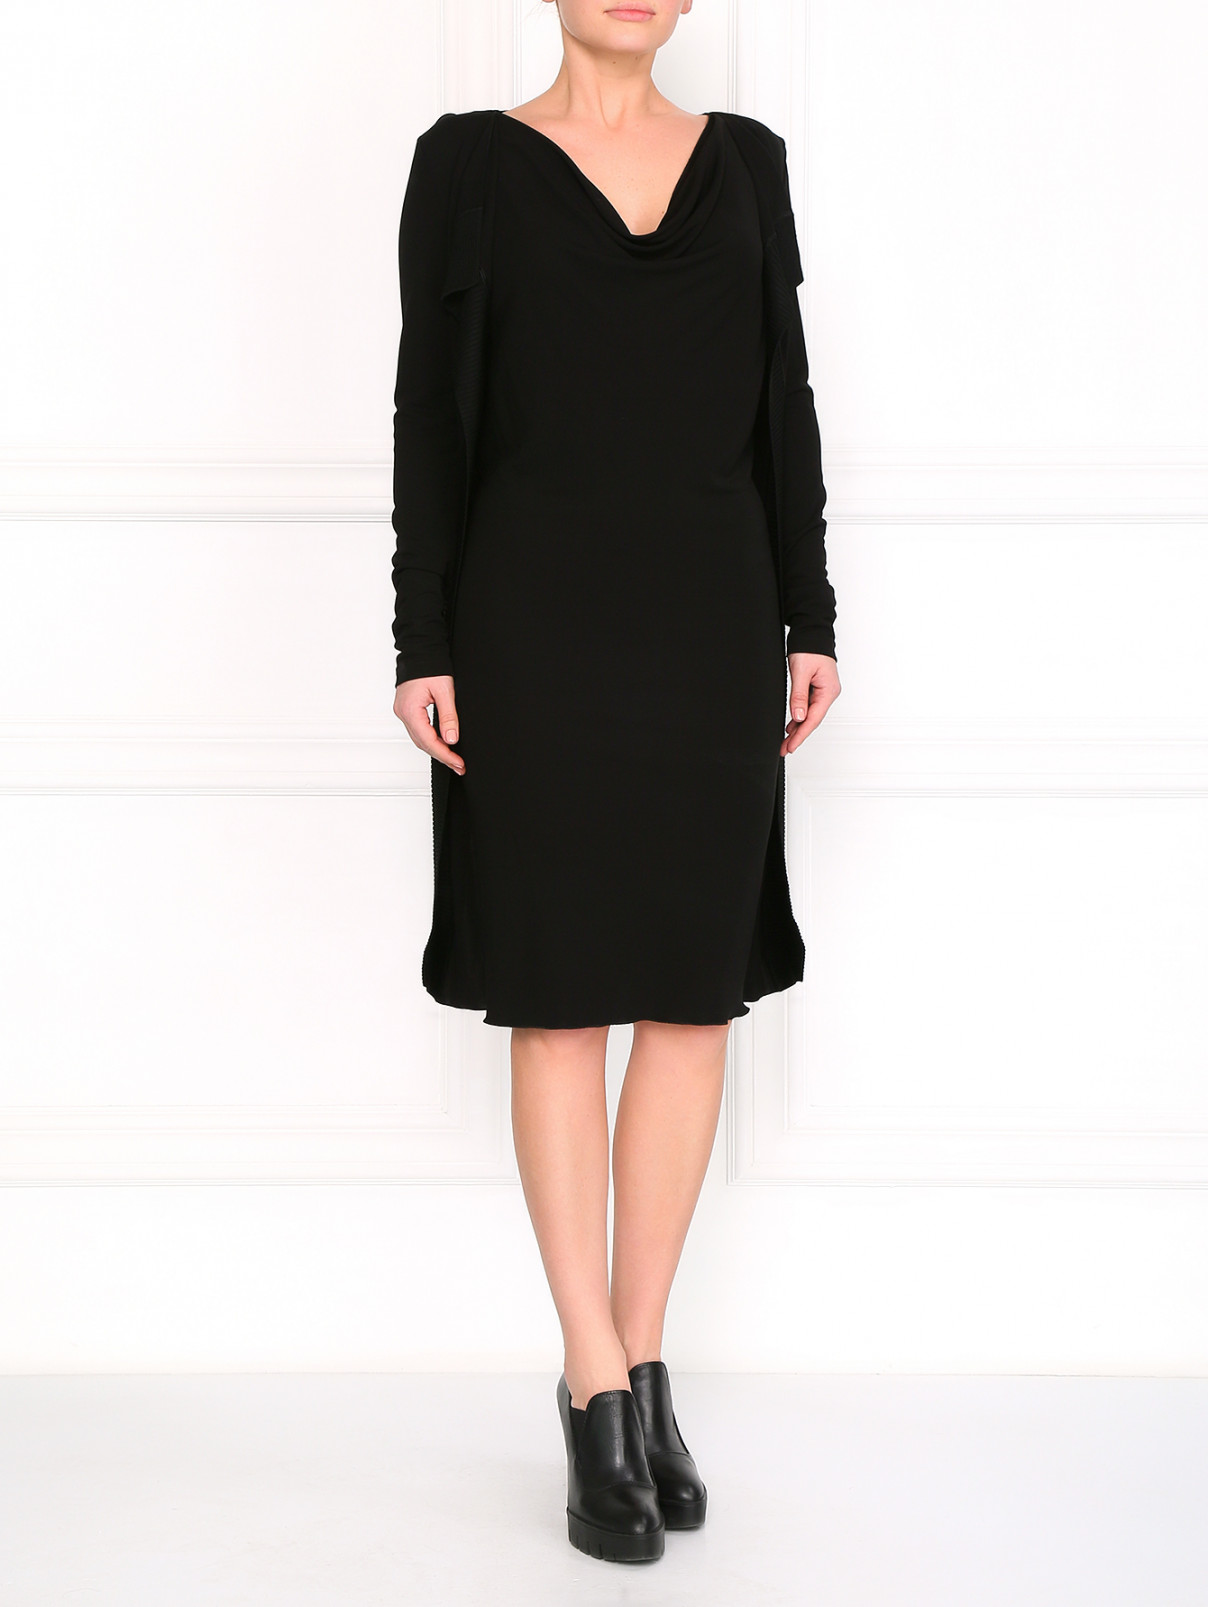 Платье с открытым воротом Jean Paul Gaultier  –  Модель Общий вид  – Цвет:  Черный